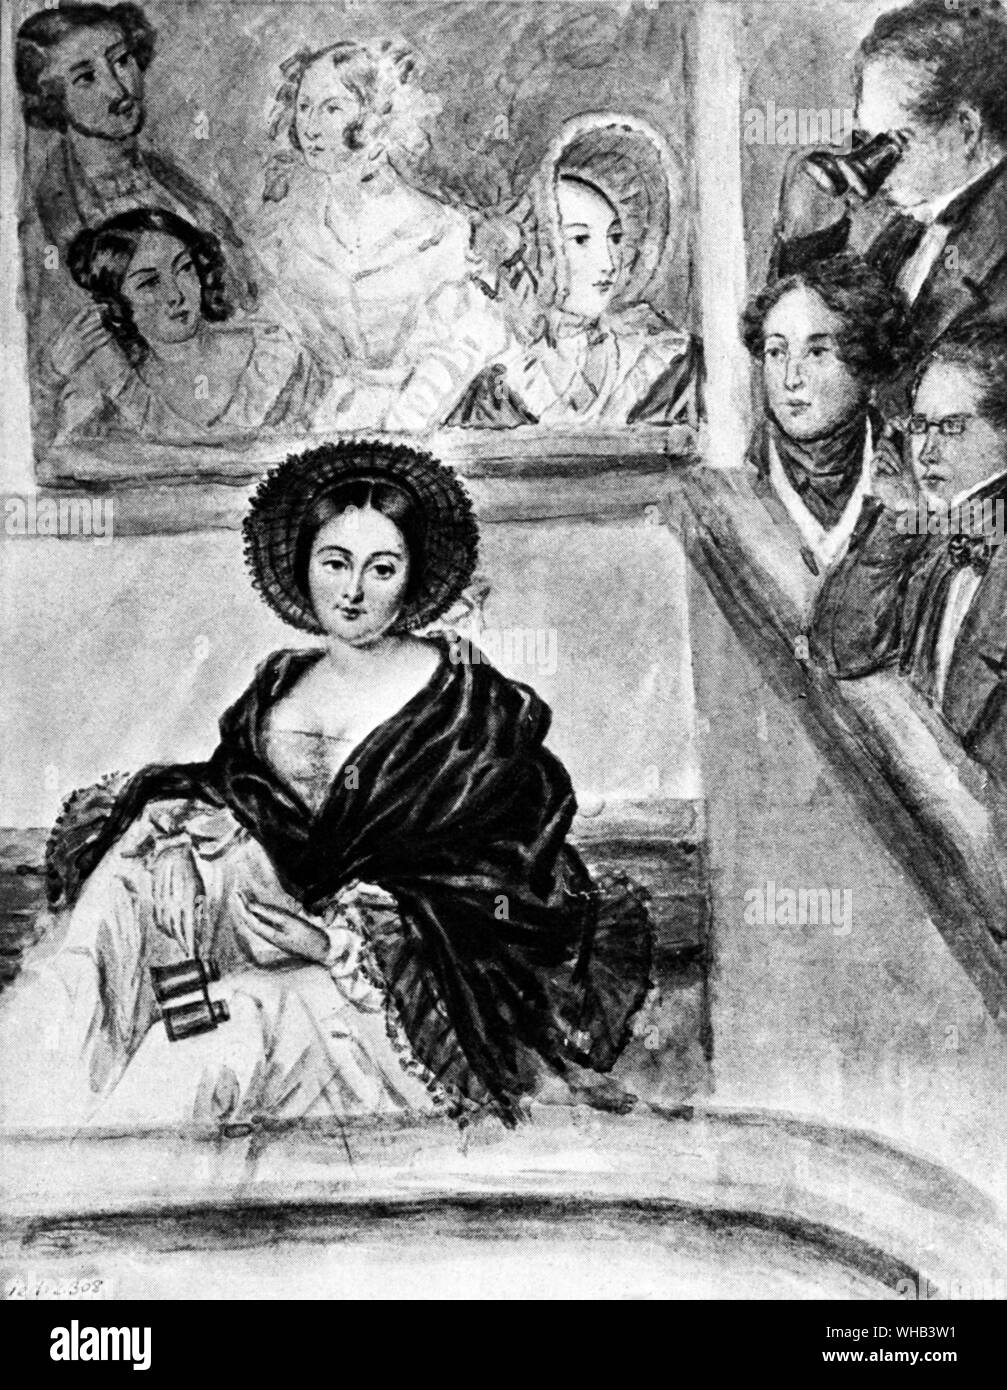 Marie Duplessis 1824-1847 war eine französische Kurtisane und Mätresse zu einer Reihe von Prominenten und wohlhabende Männer. Sie ist die Grundlage von Marguerite Gautier, die Hauptfigur von La Dame aux Camélias von Alexandre Dumas dem jüngeren, einem der Duplessis 'Liebhaber. Stockfoto